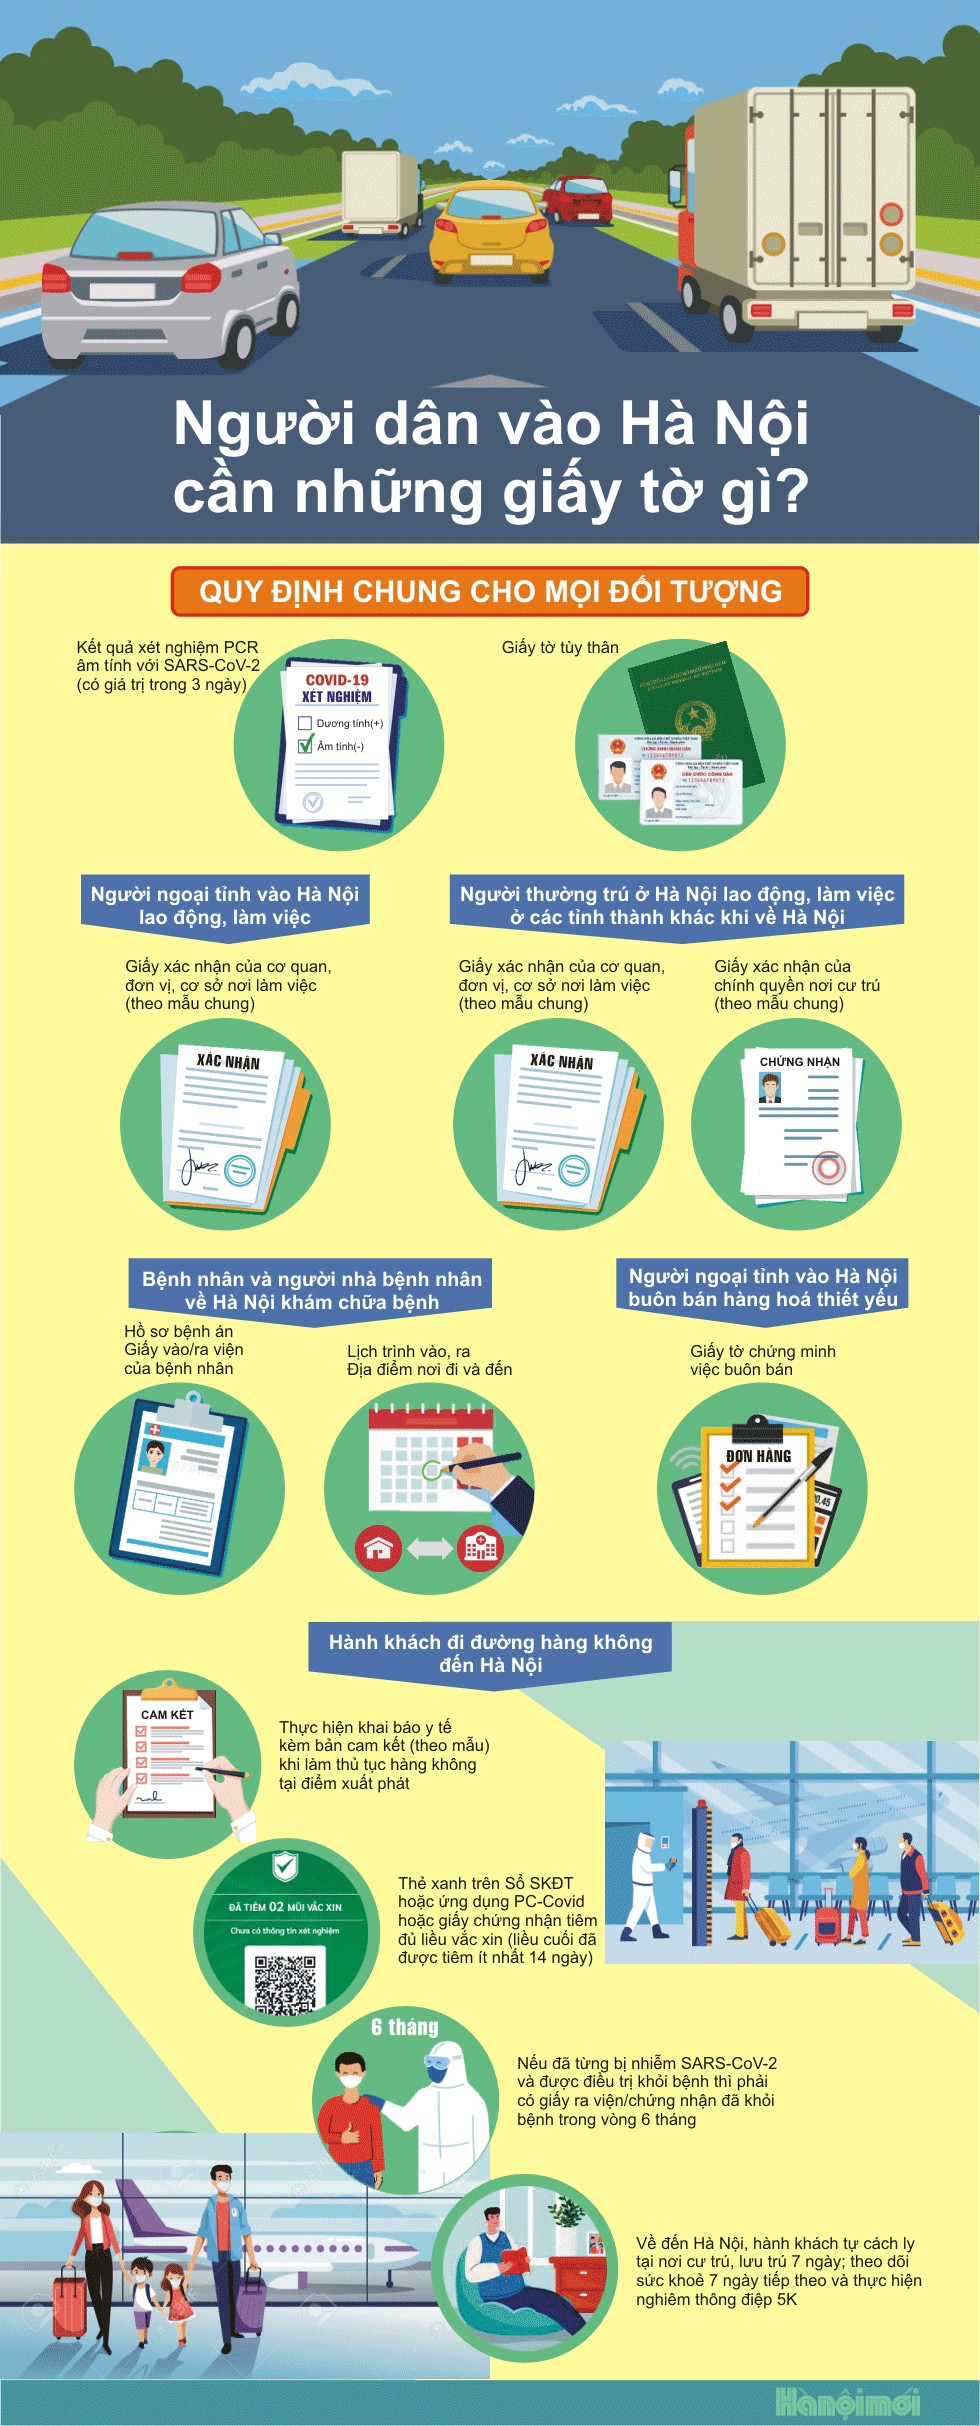 Infographic: Người dân vào Hà Nội cần những giấy tờ gì?